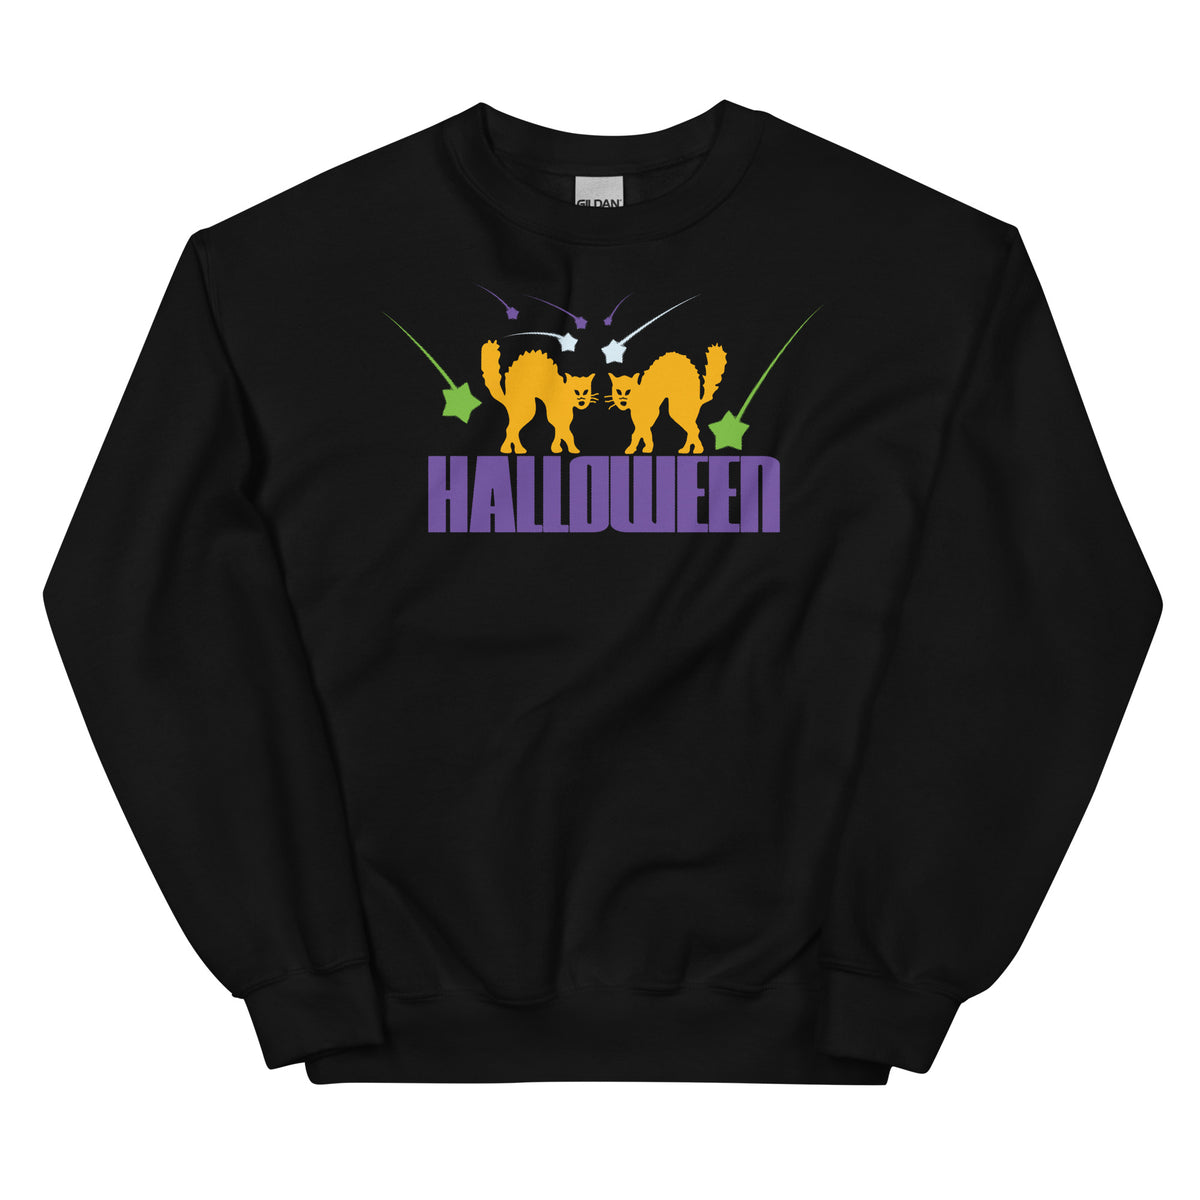 Retro 80's Halloween Sweatshirt